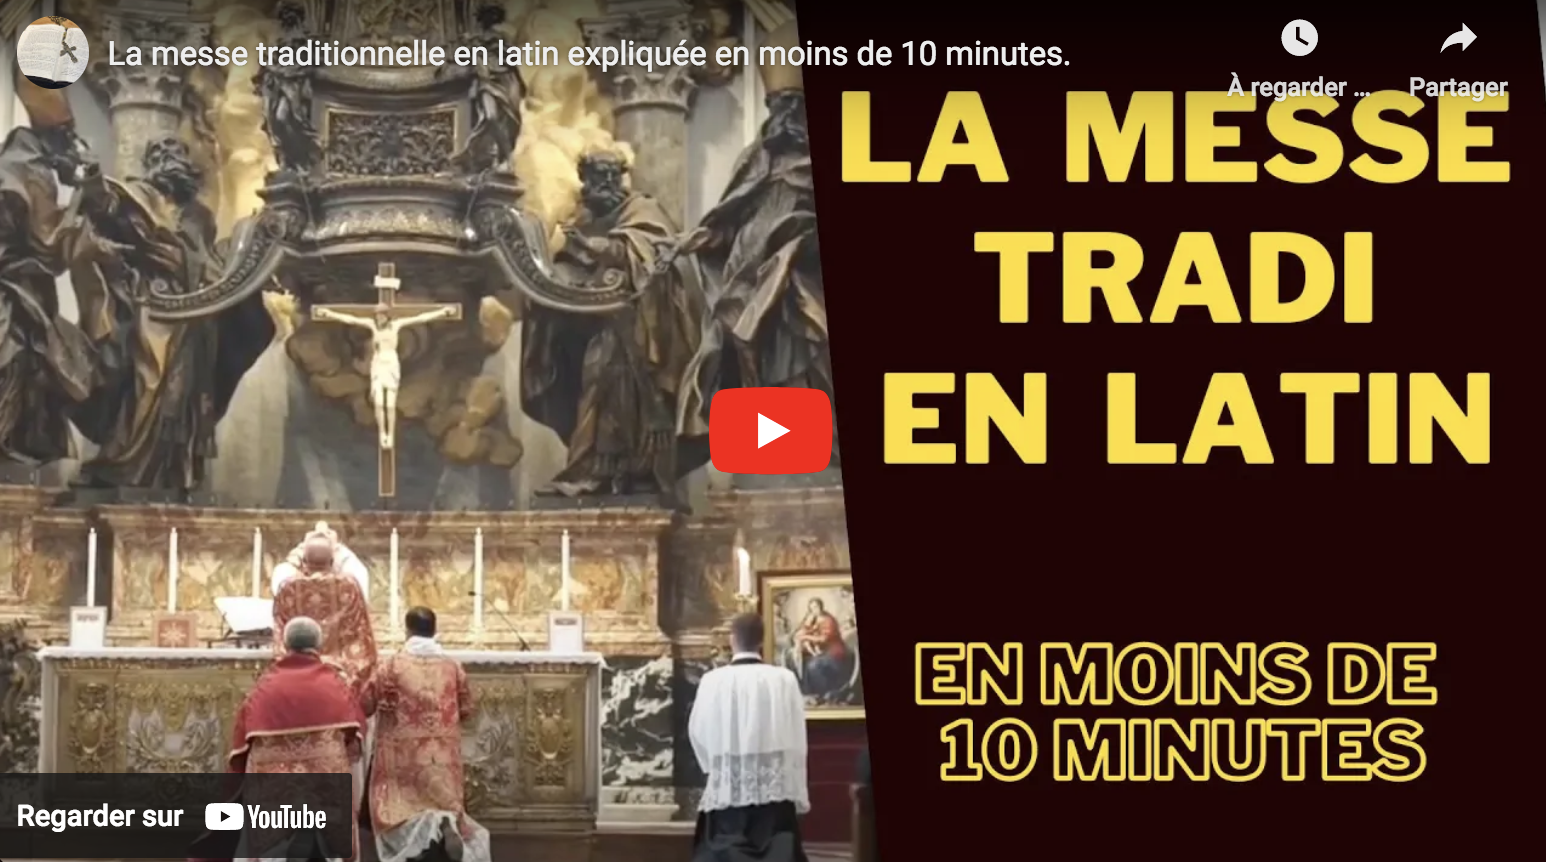 La messe traditionnelle en latin expliquée en moins de 10 minutes (VIDÉO)